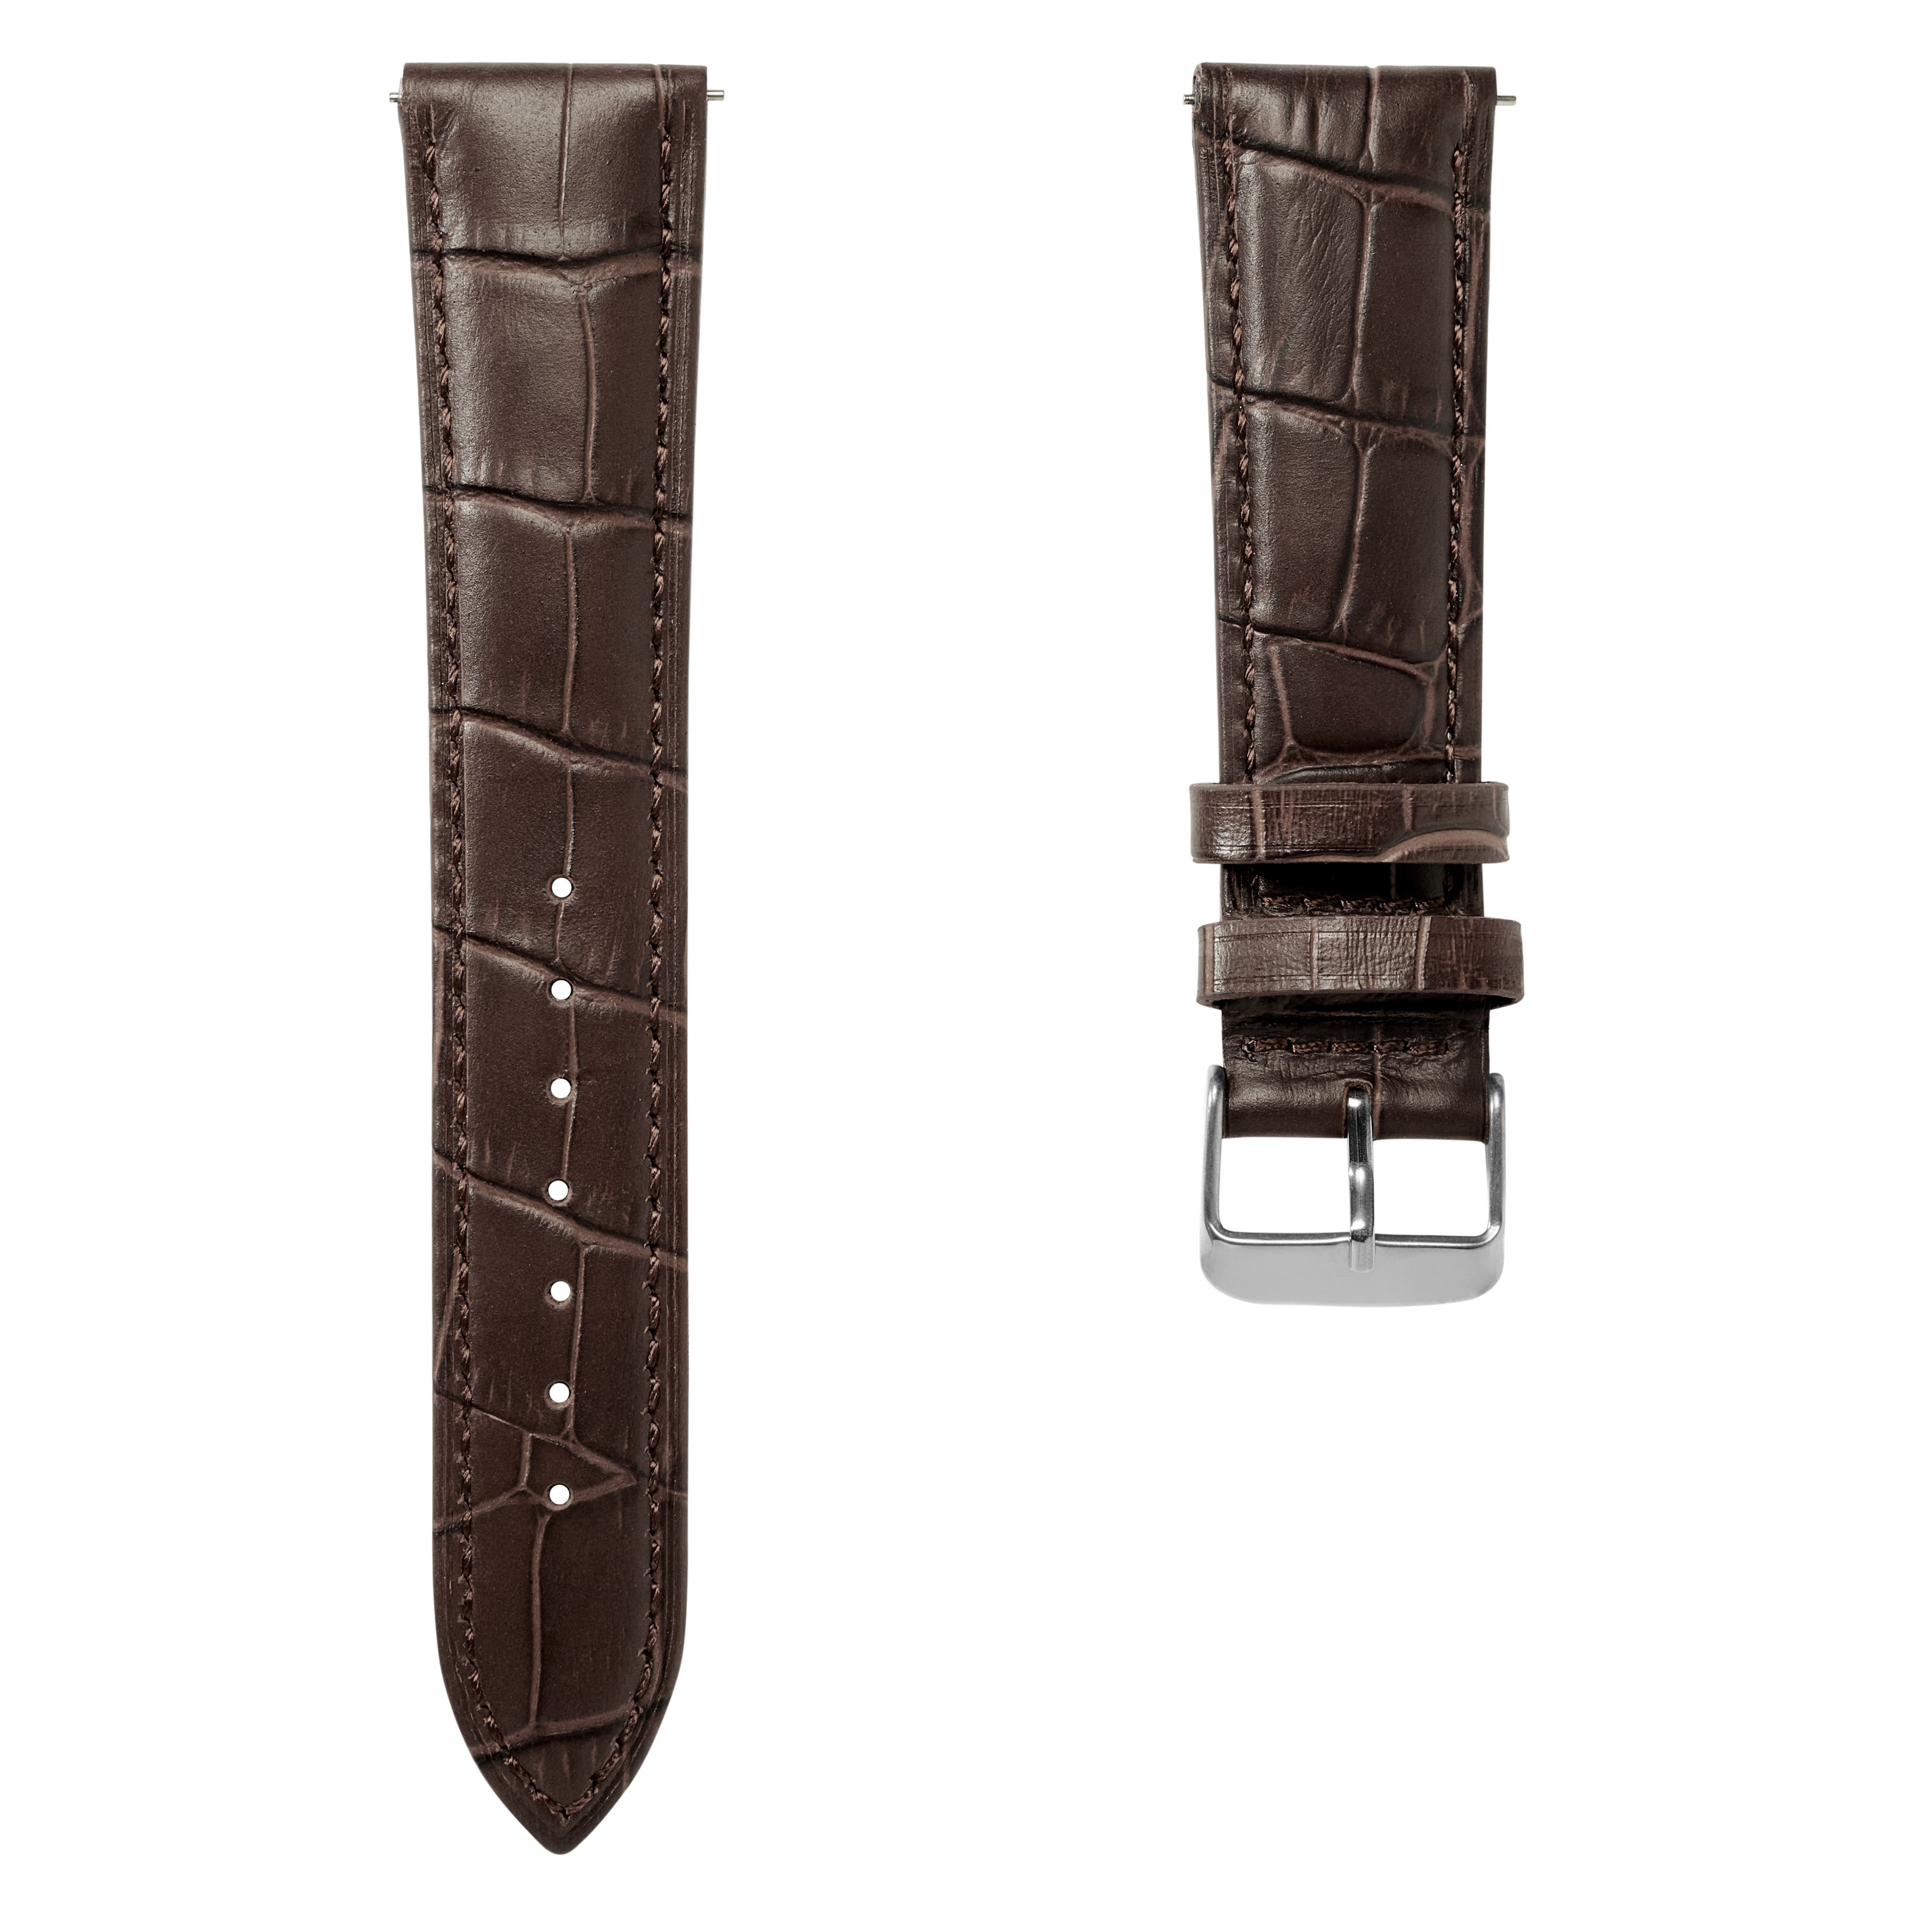 Correa de reloj de cuero marrón oscuro con relieve de cocodrilo de 21 mm y hebilla en plateada - De liberación rápida